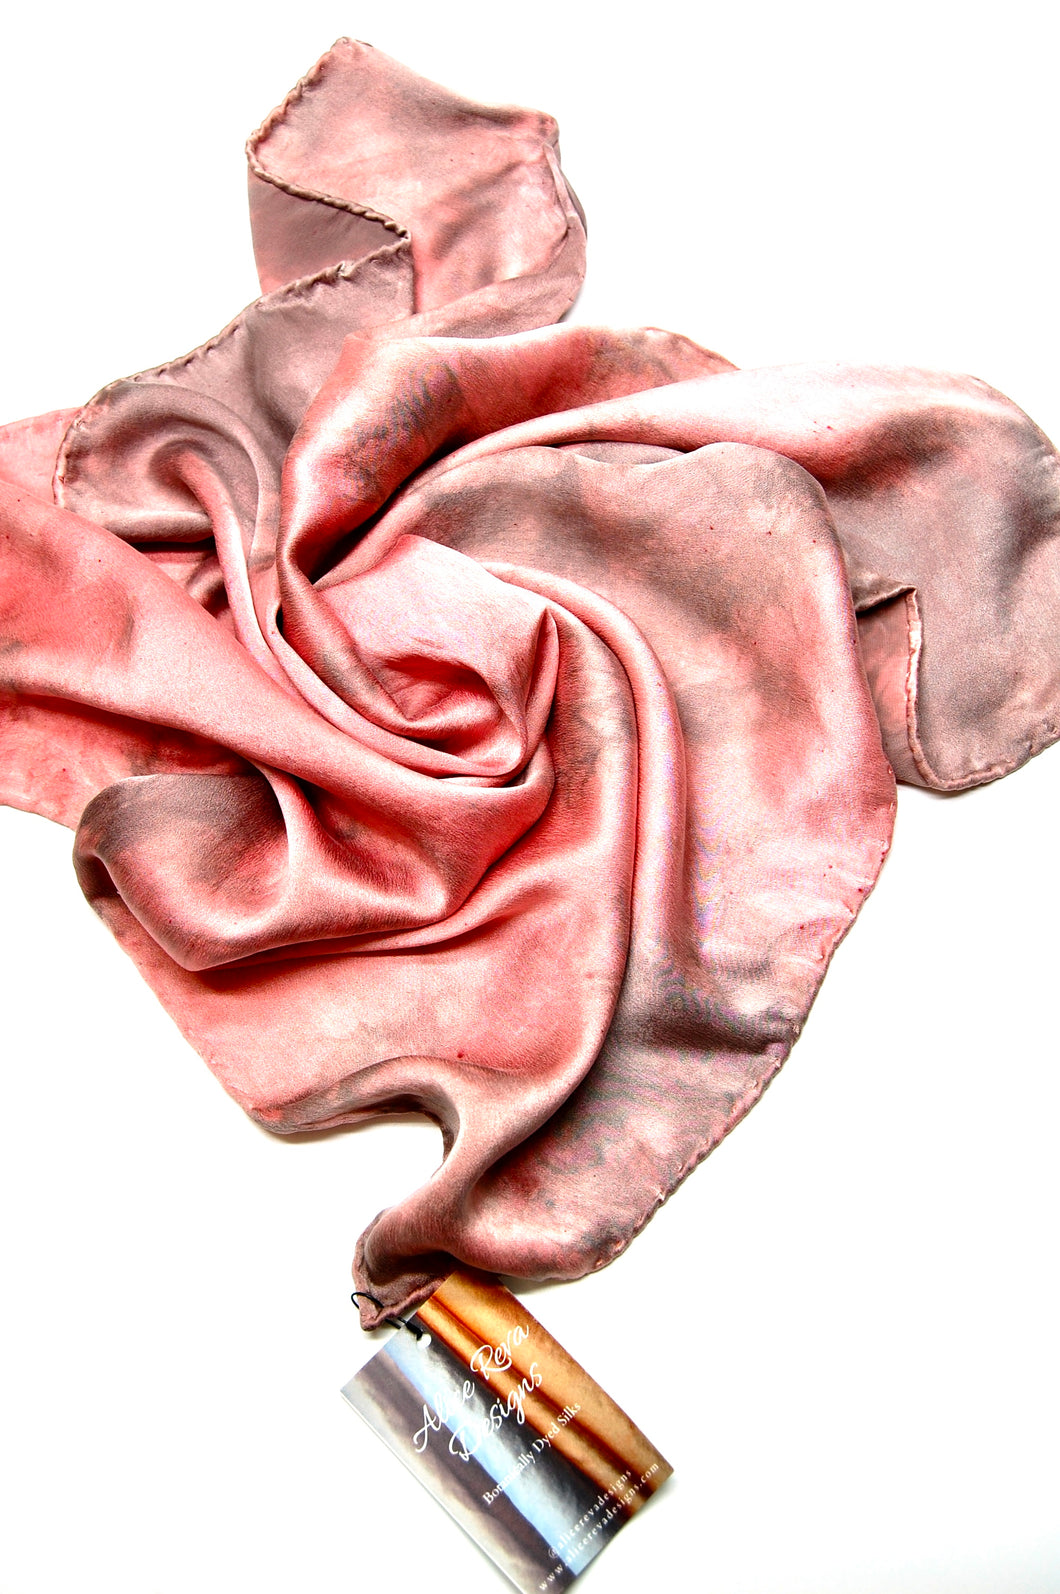 Botanically Dyed Silk Bandana - Charmeuse Silk